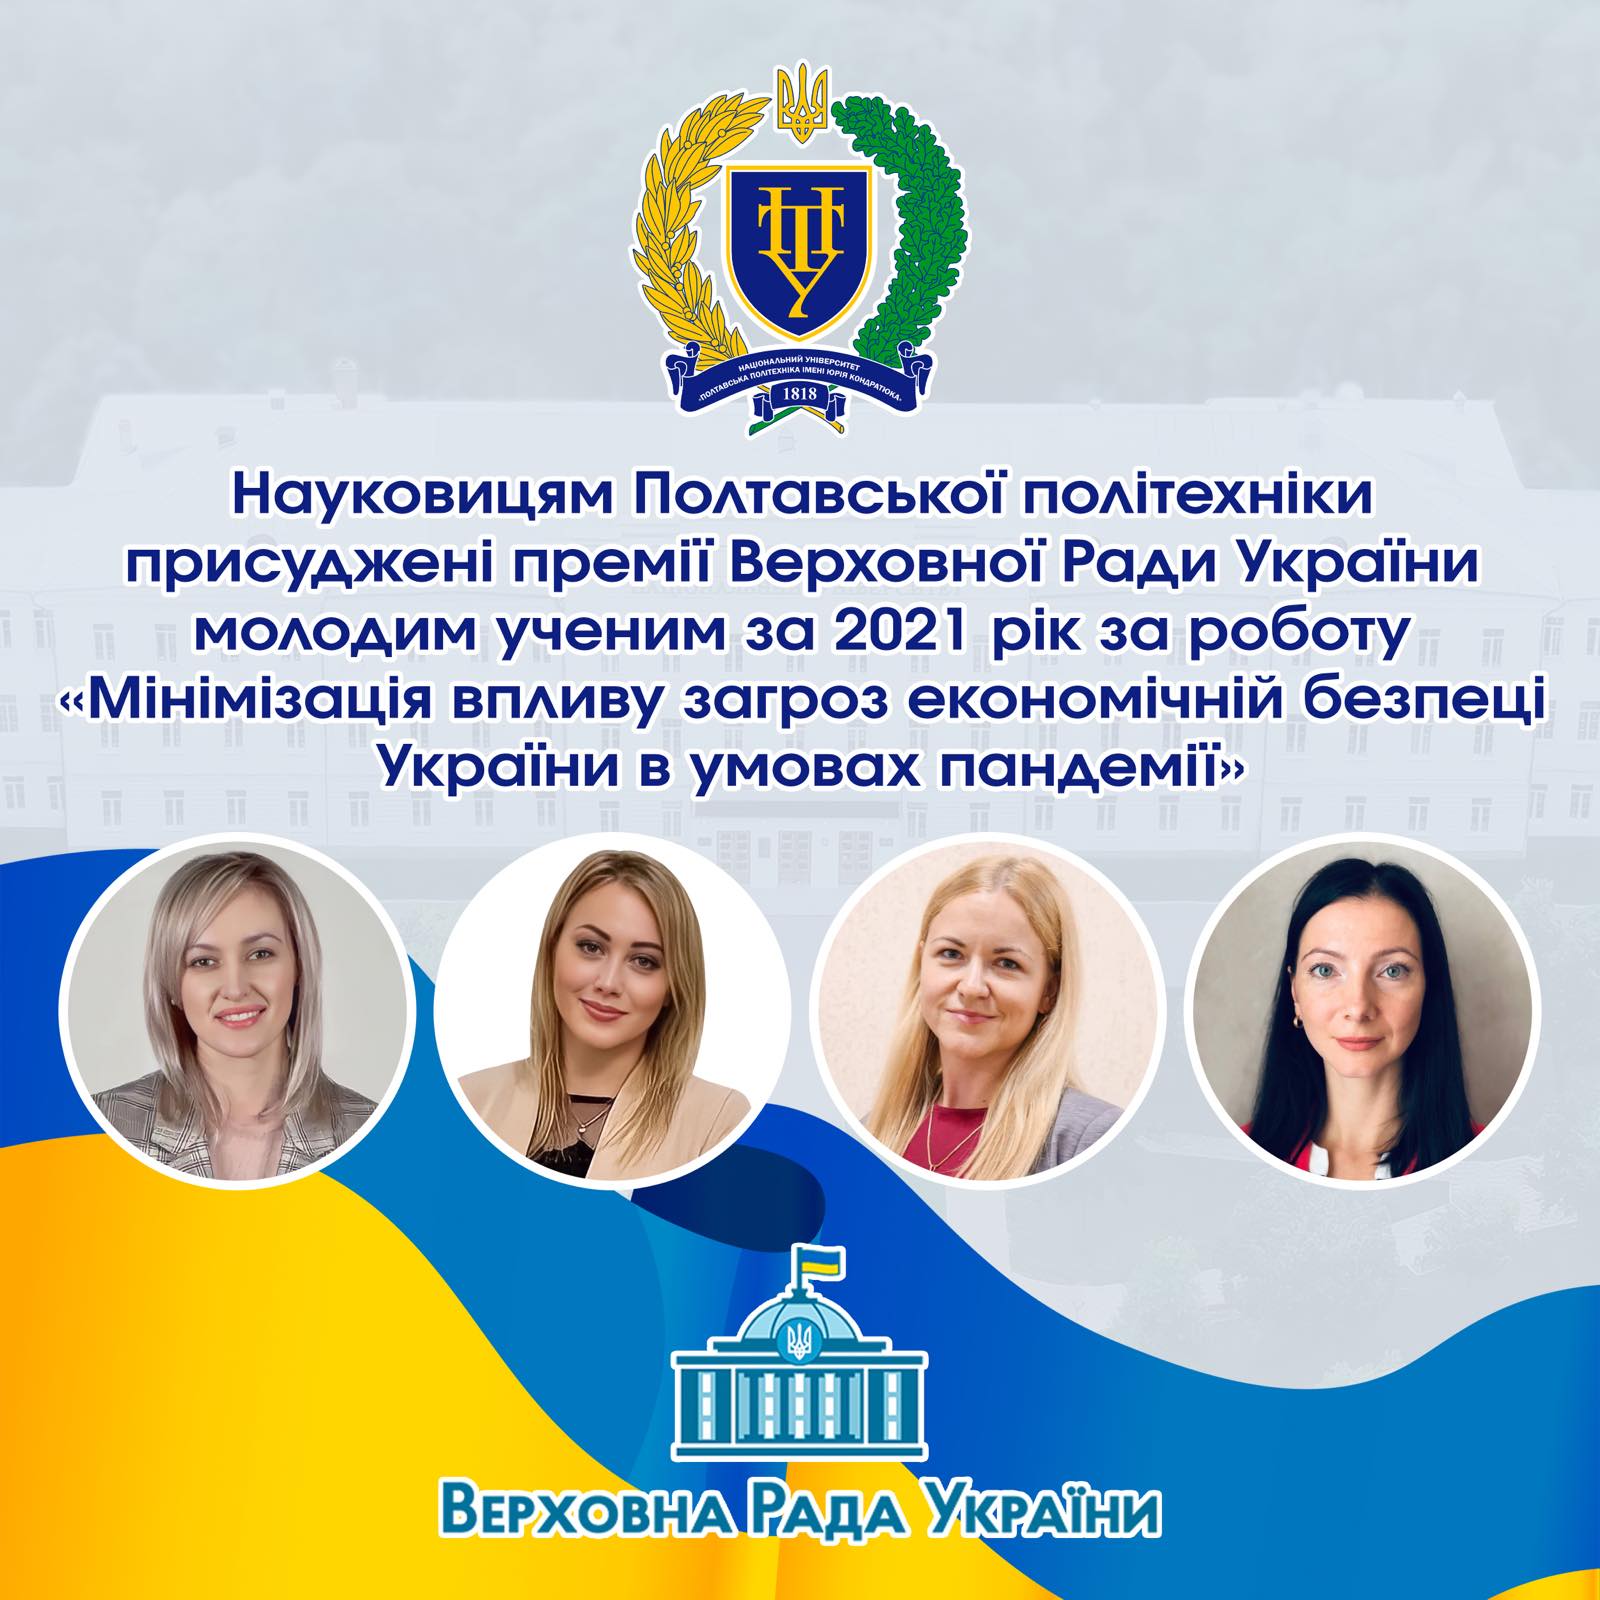 Чотирьом науковицям політехніки присуджено Премії Верховної Ради України молодим ученим за 2021 рік